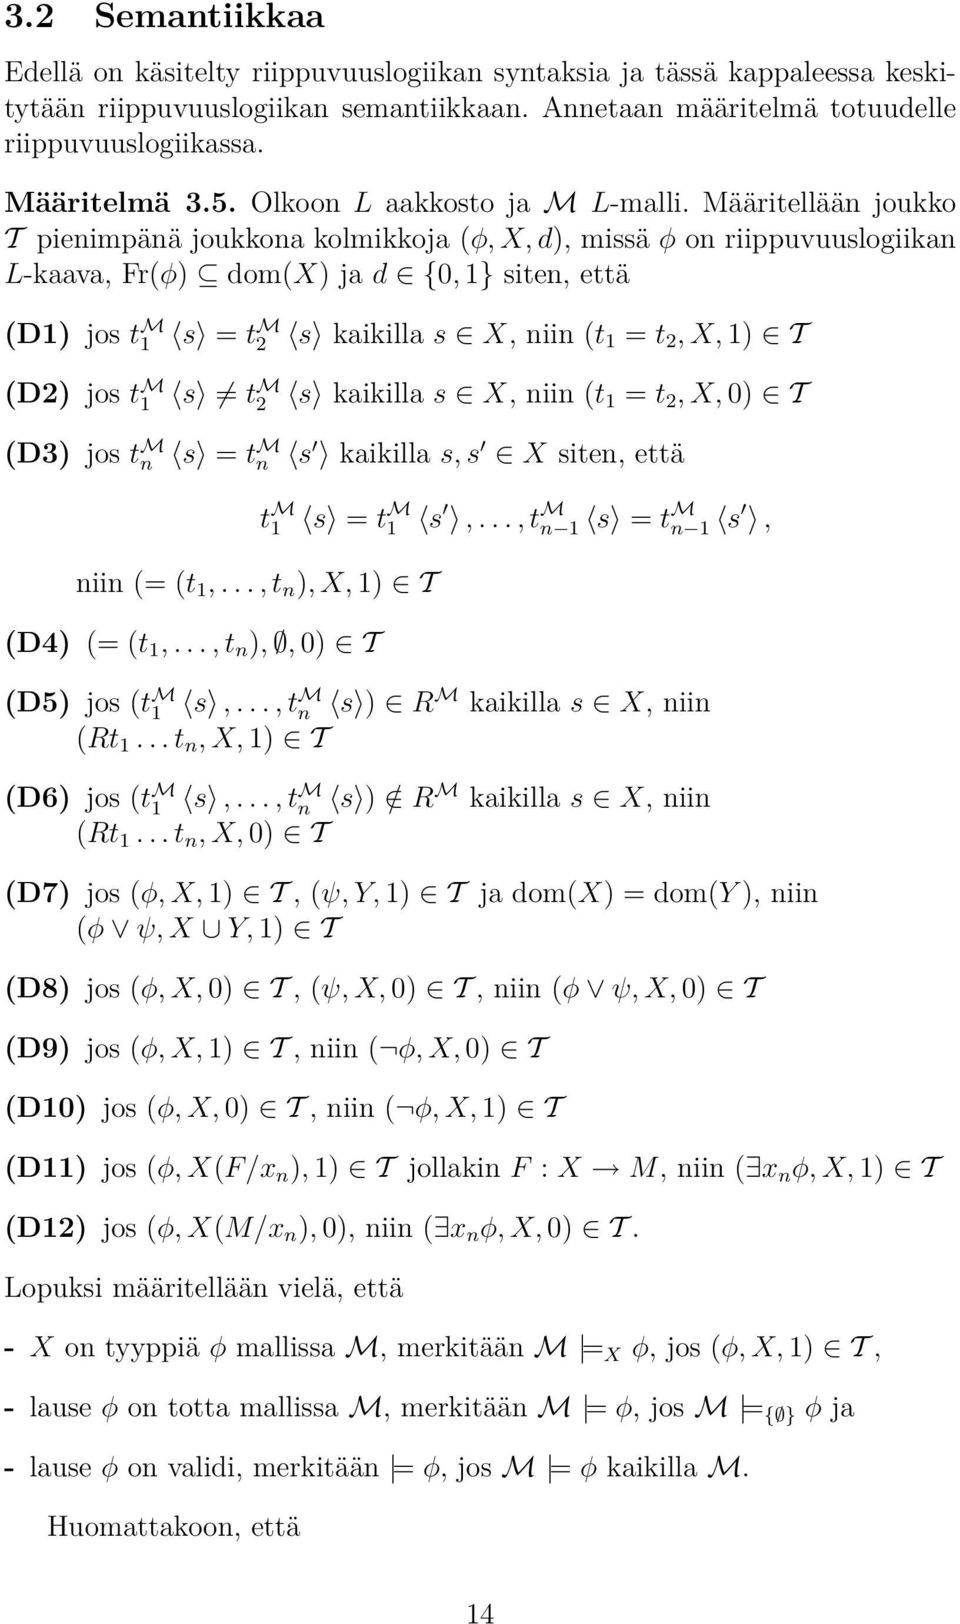 Määritellään joukko T pienimpänä joukkona kolmikkoja (φ, X, d), missä φ on riippuvuuslogiikan L-kaava, Fr(φ) dom(x) ja d {0, 1} siten, että (D1) jos t M 1 s = t M 2 s kaikilla s X, niin (t 1 = t 2,